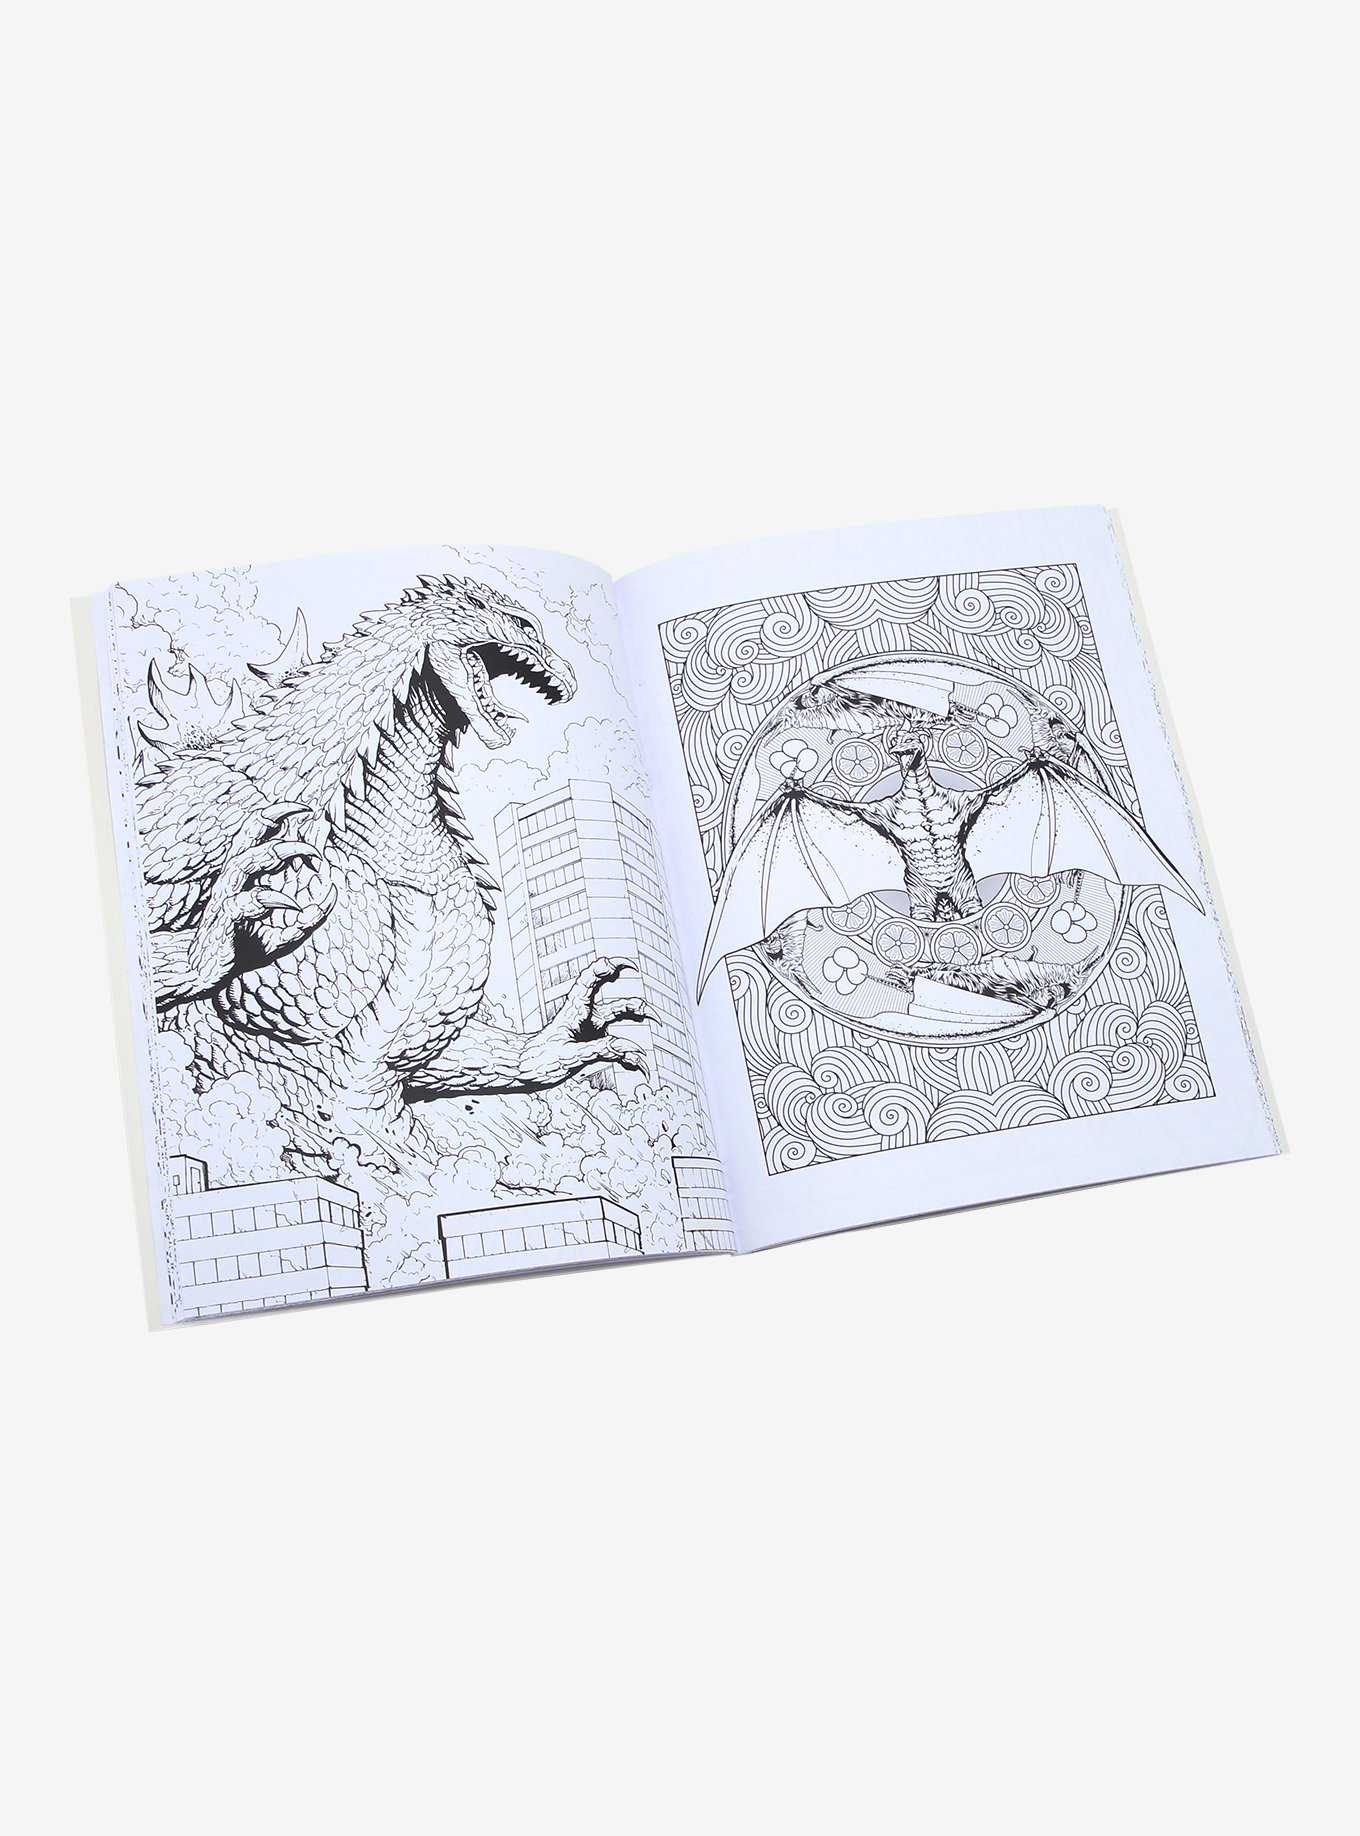 Godzilla: The Official Coloring Book, , hi-res